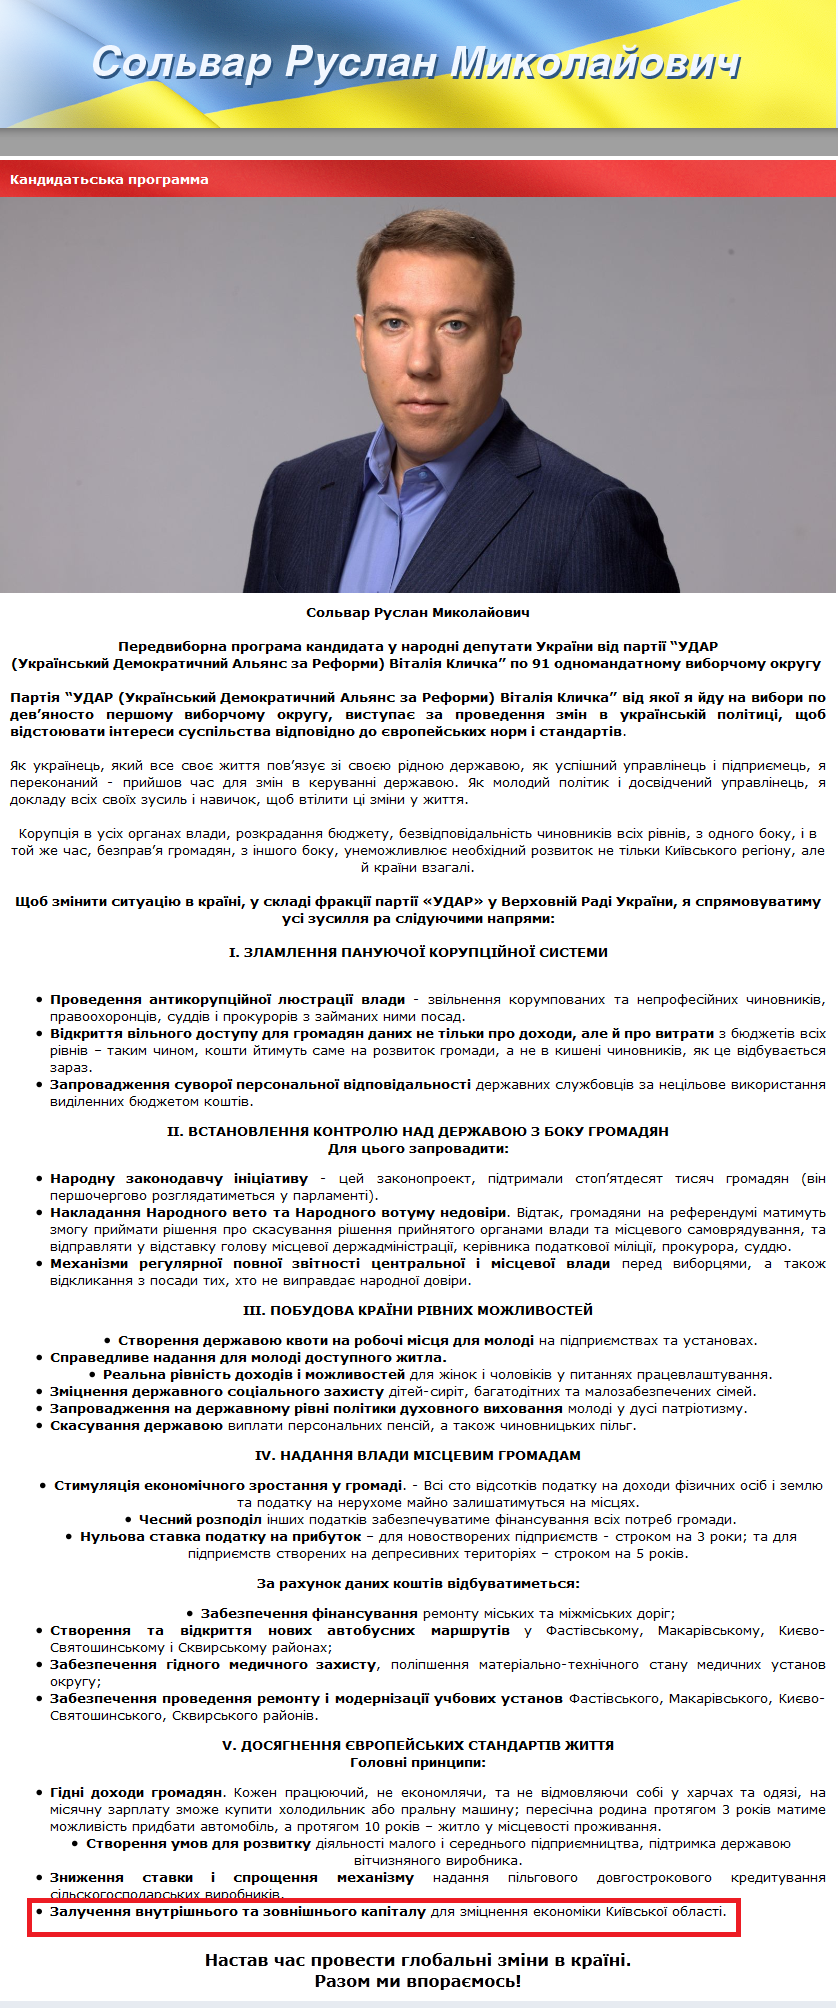 http://solvar.com.ua/kandidatska-programma-.html